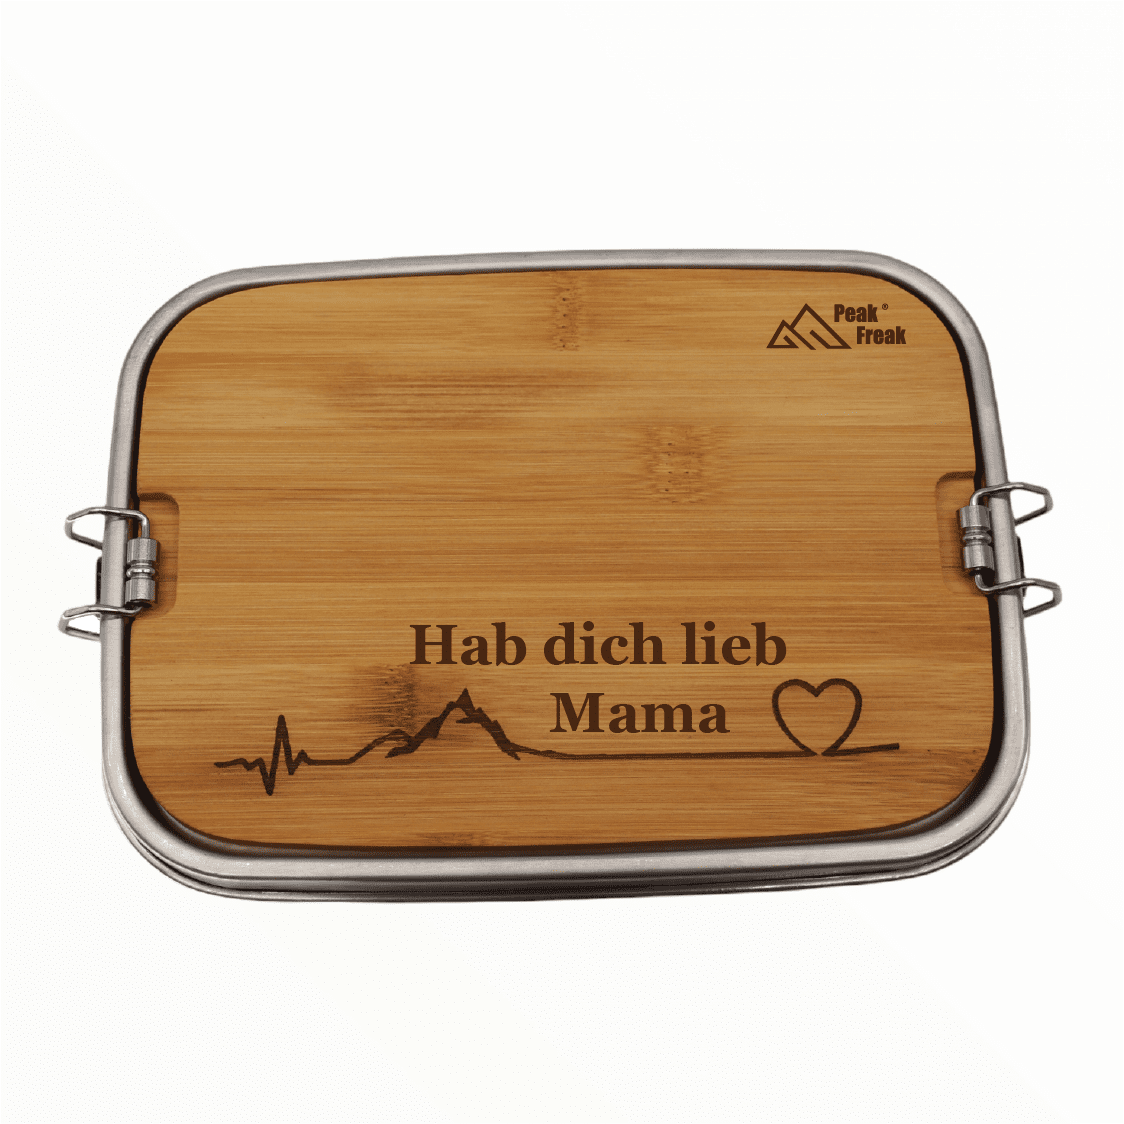 Mom lunch box